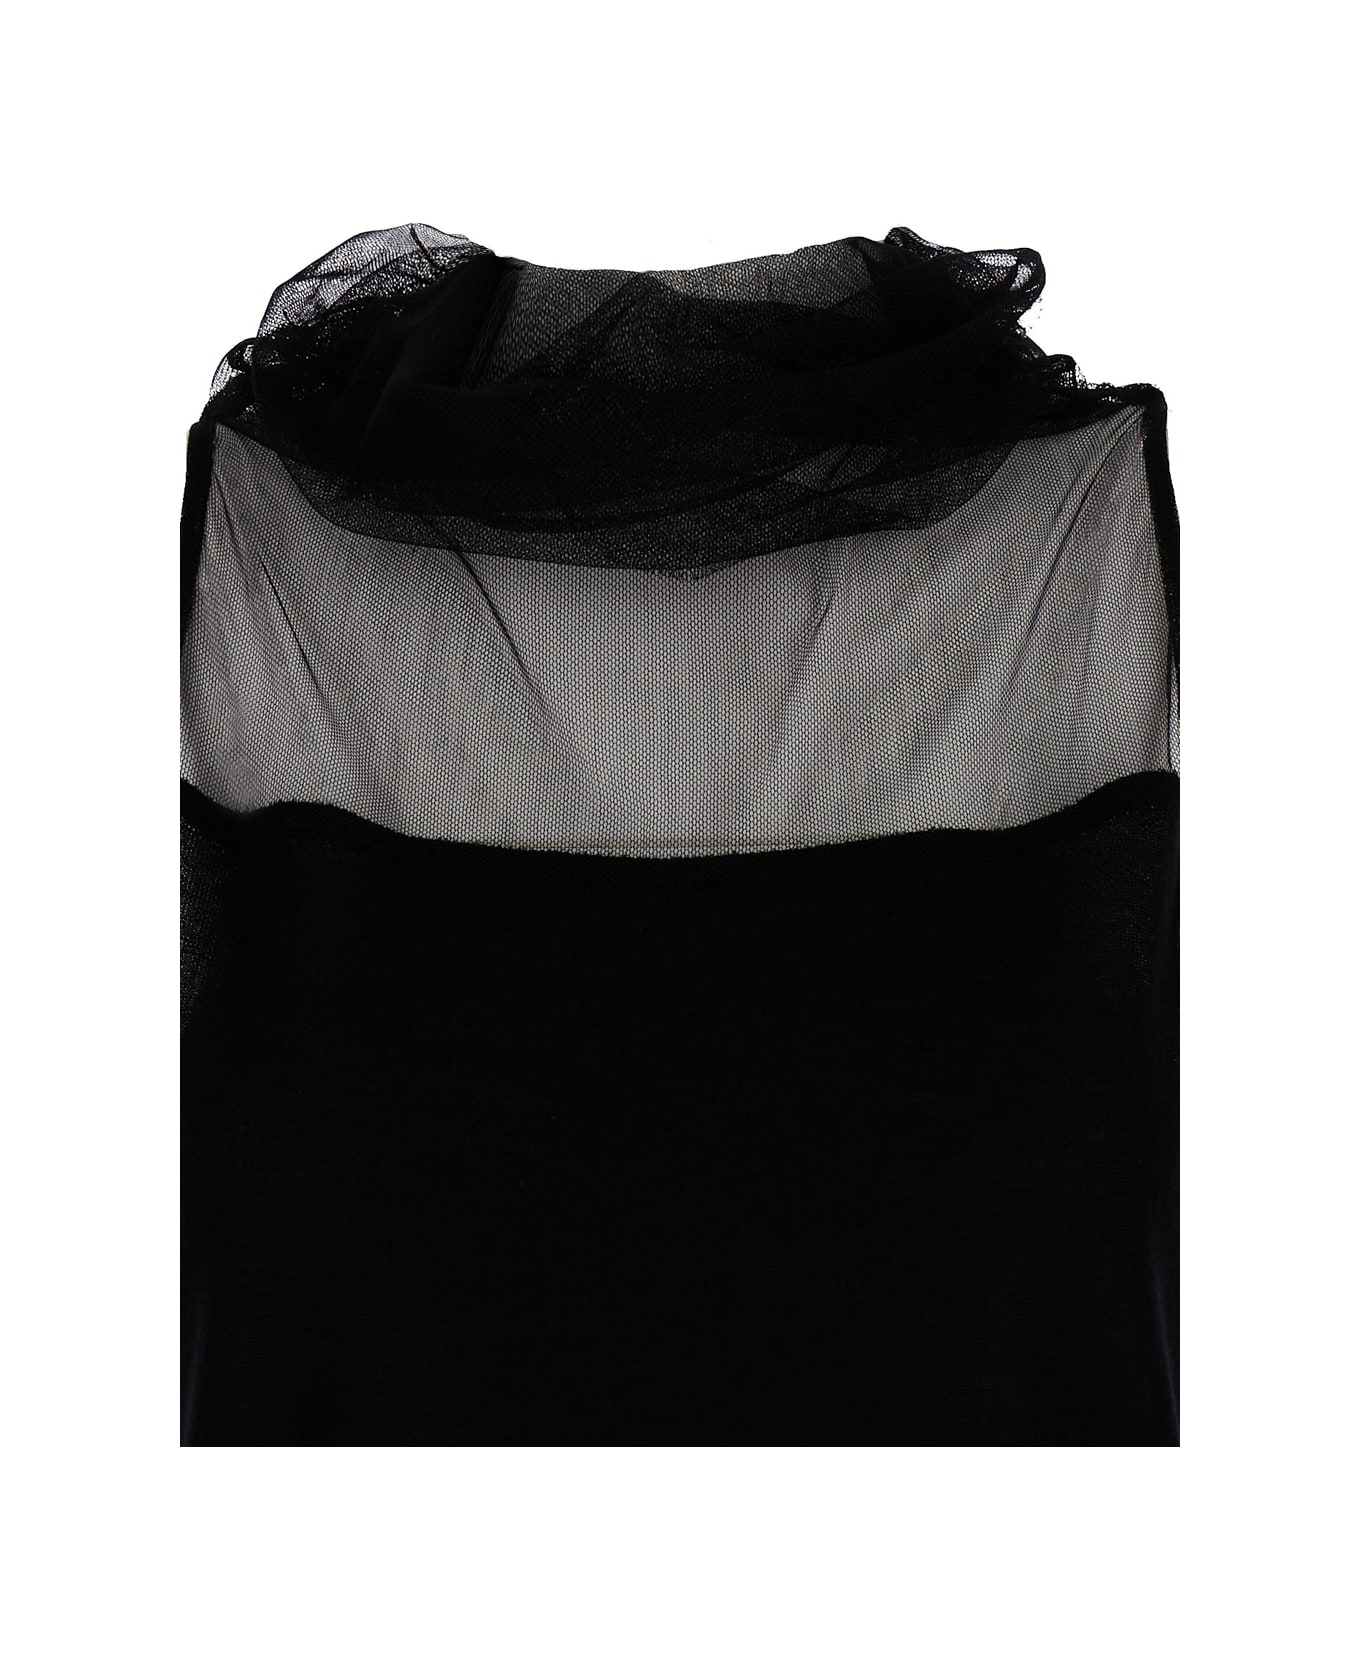 Fabiana Filippi High Neck Black Top In Silk & Cashmere Blend Woman - Black